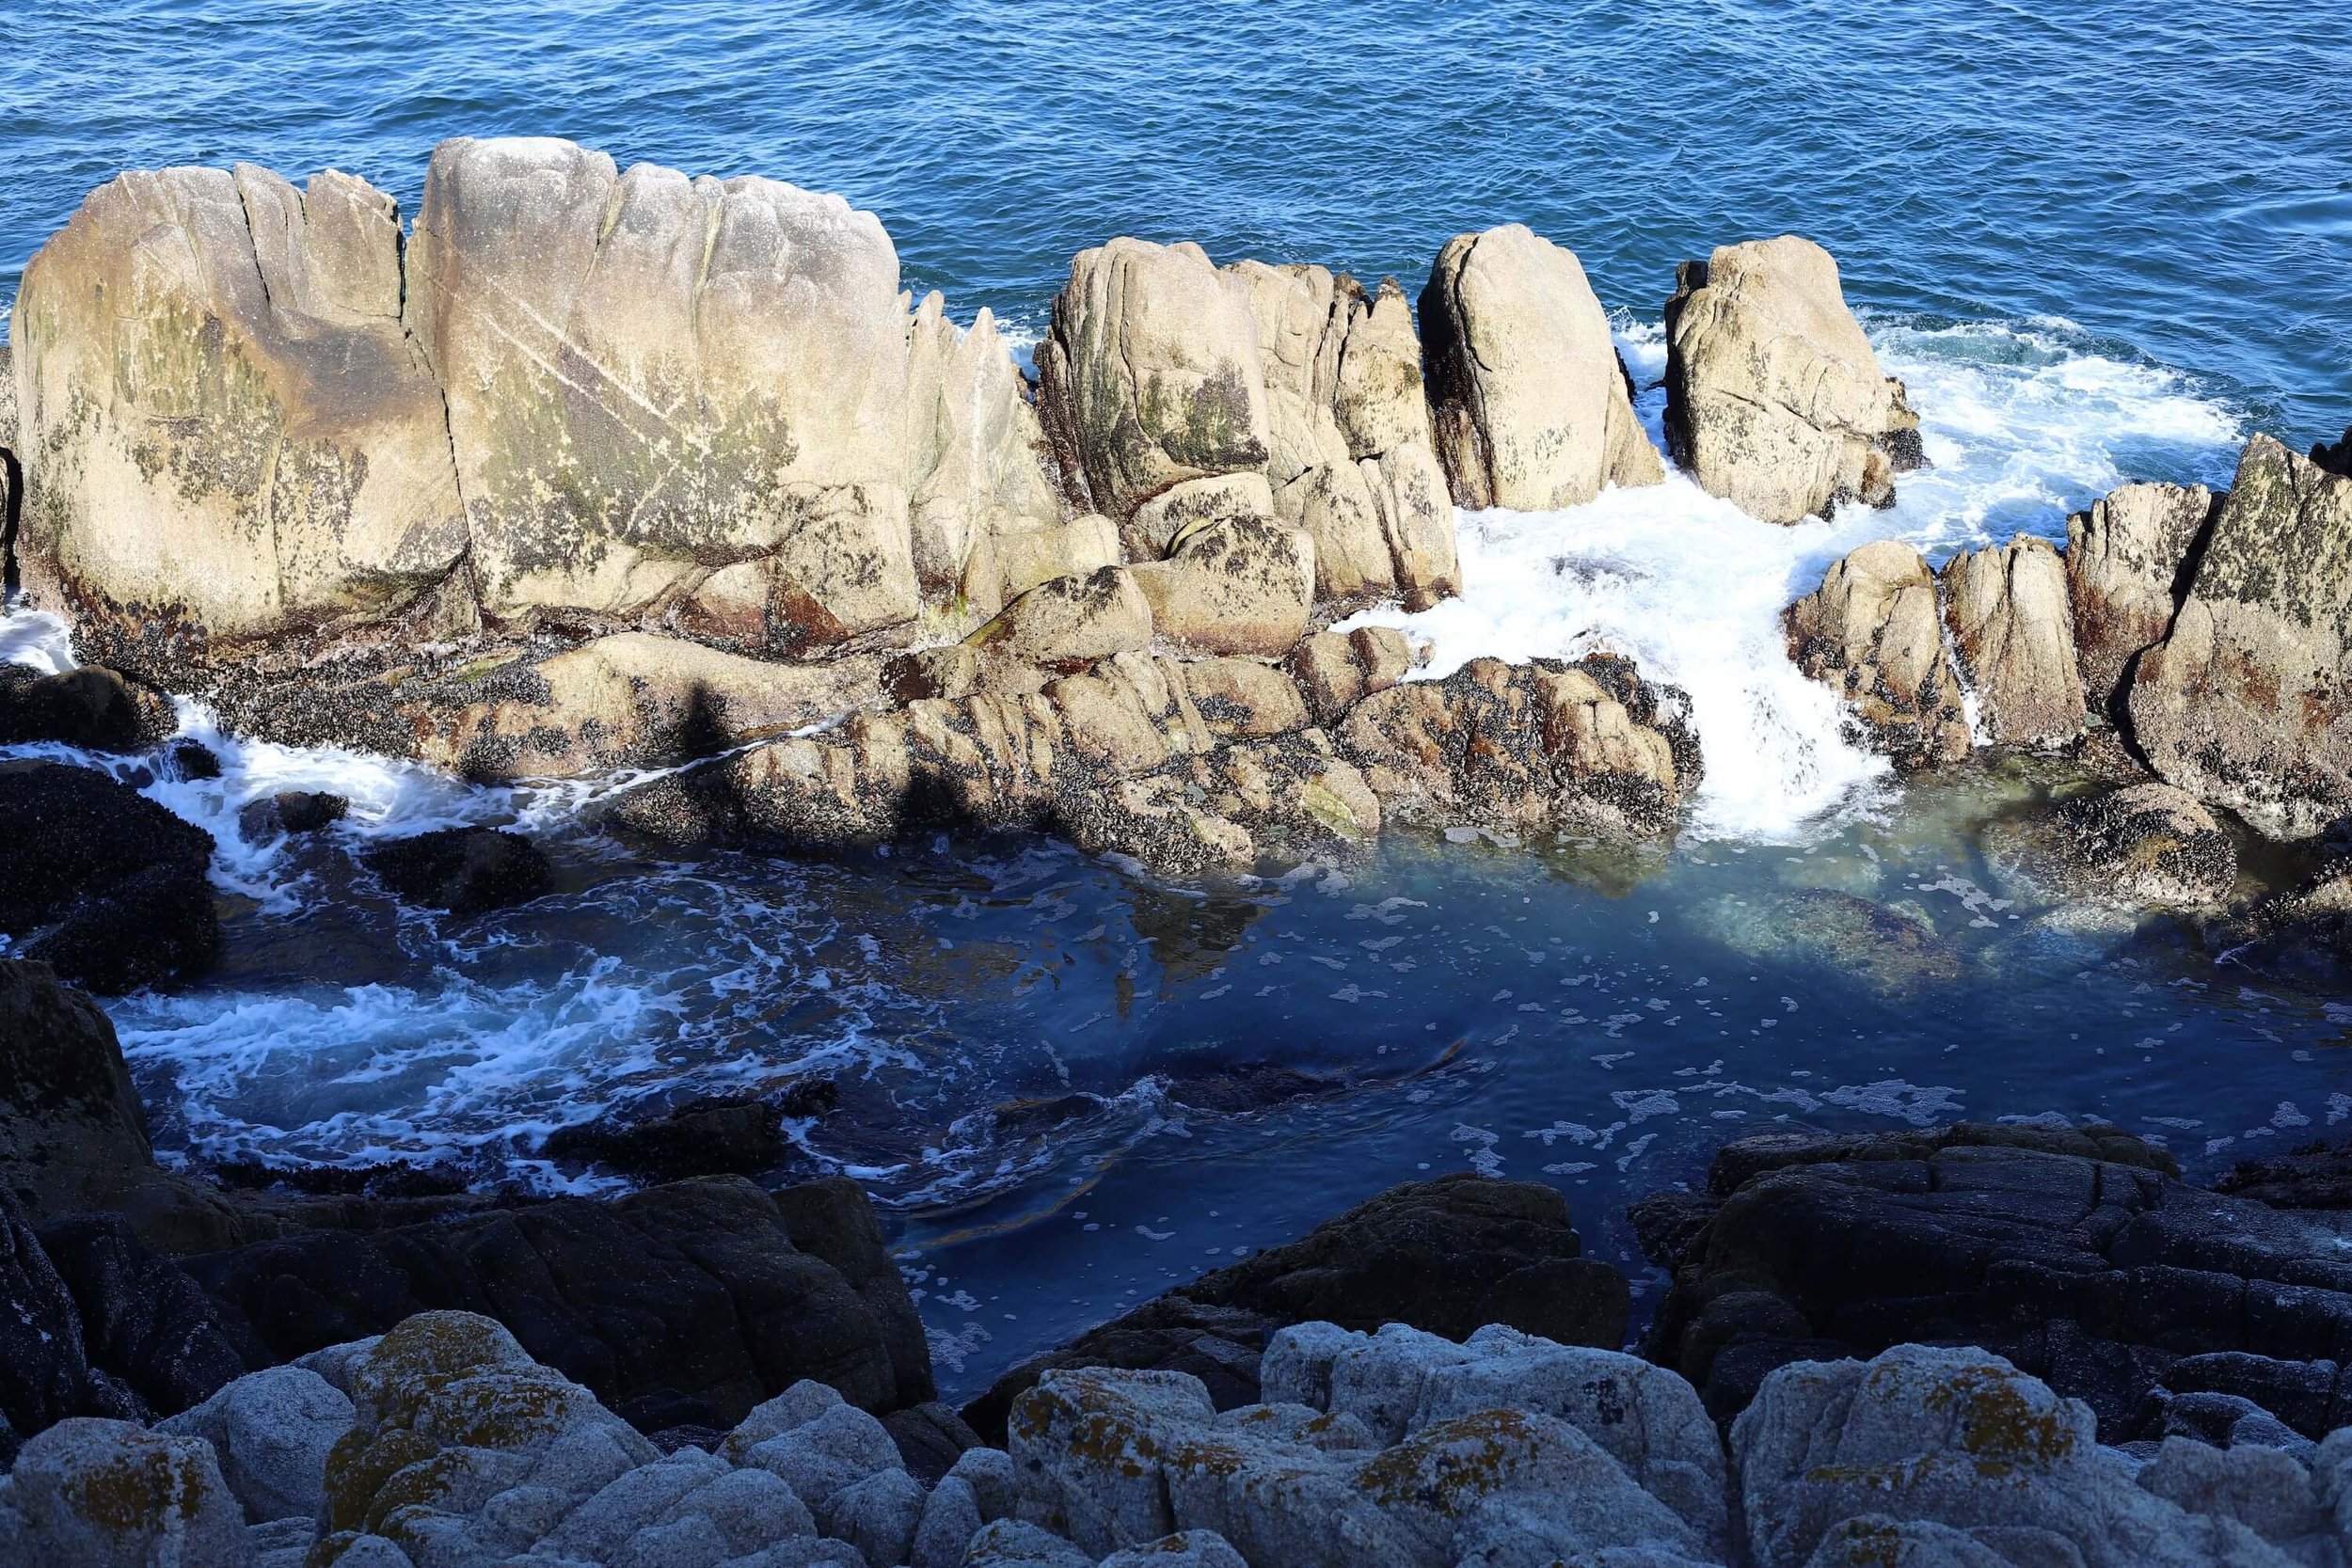 rocks-of-pacific-ocean.JPG